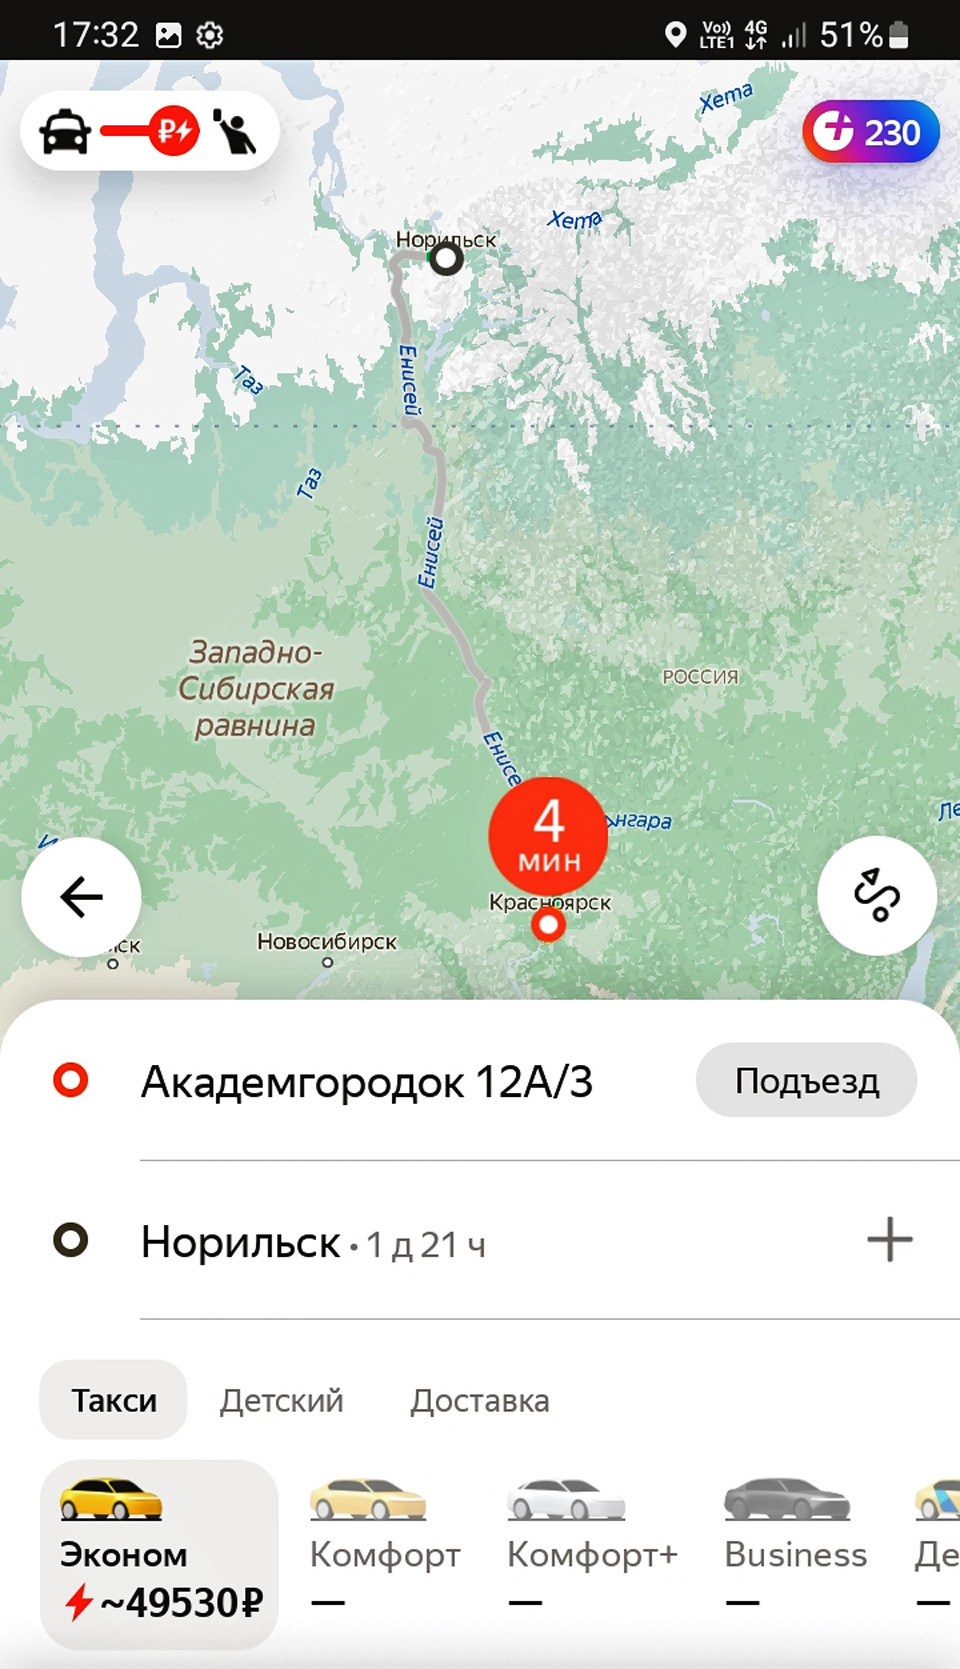 «Яндекс GO» прокладывает несуществующие маршруты